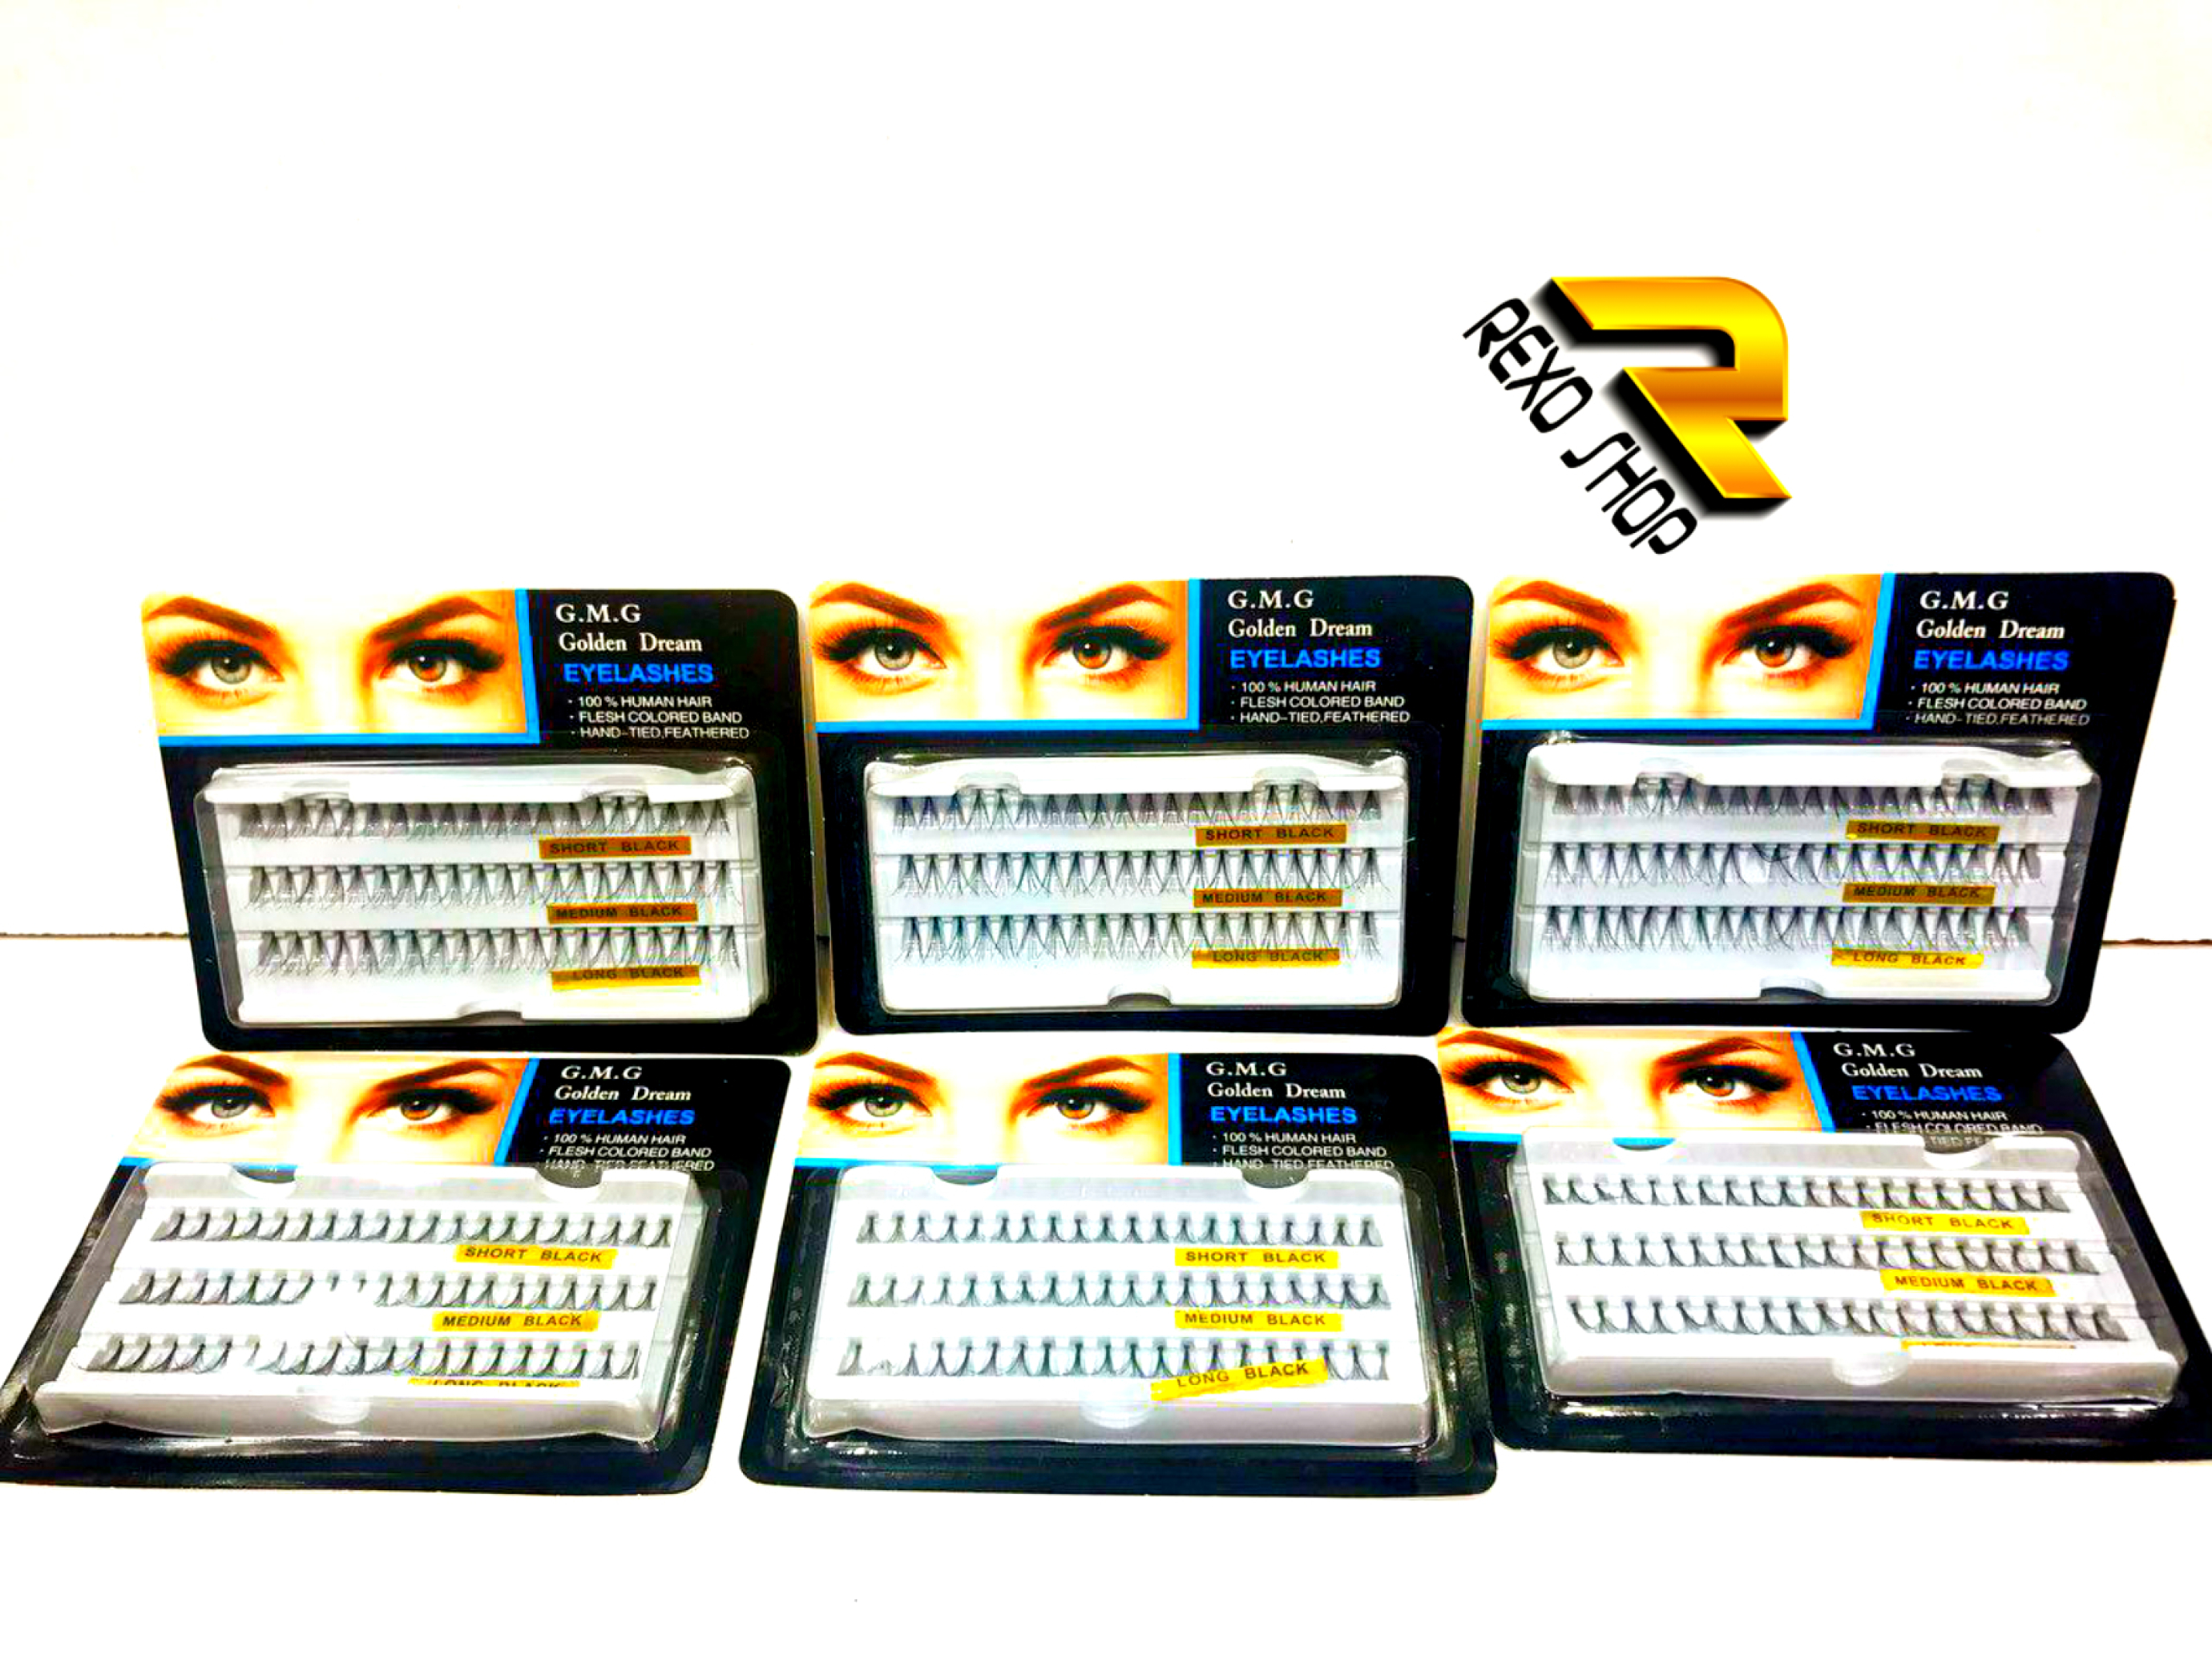  مژه مصنوعی Golden Dream در سه سایز مختلف یکی از بهترین ابزار آرایش چشم است که با قیمتی ارزان در رکسوشاپ موجود است 